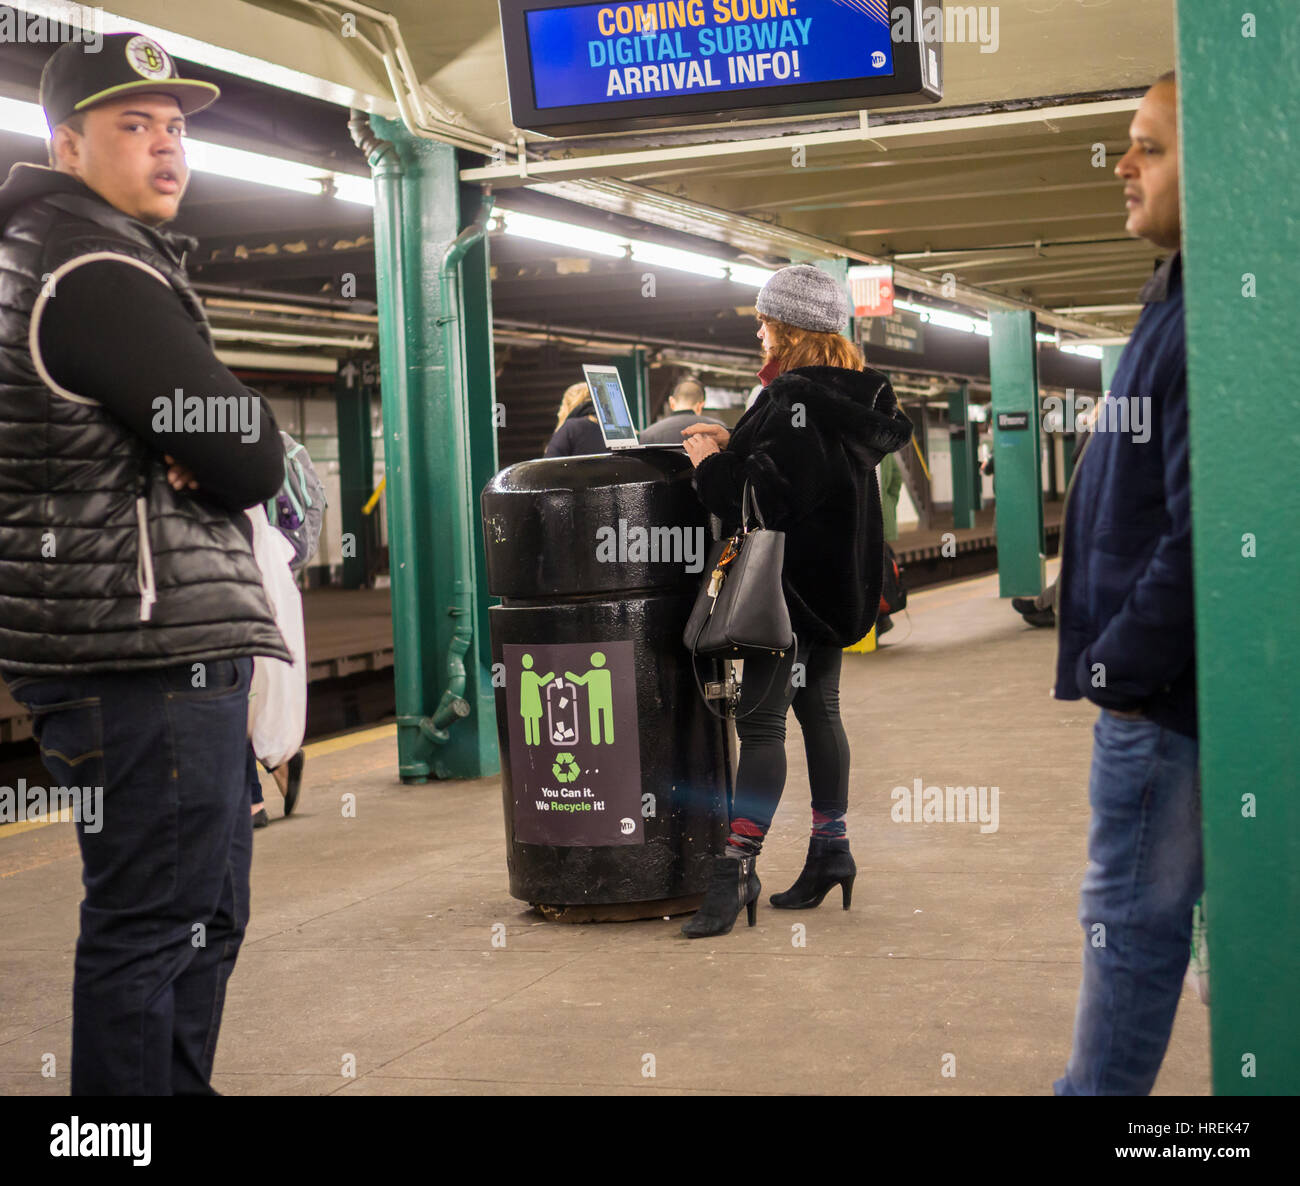 Una donna puntelli il suo computer portatile su un ricettacolo di rifiuti in attesa del treno alla stazione Hoyt-Schermerhorn di Brooklyn a New York martedì, 21 febbraio 2017. (© Richard B. Levine) Foto Stock